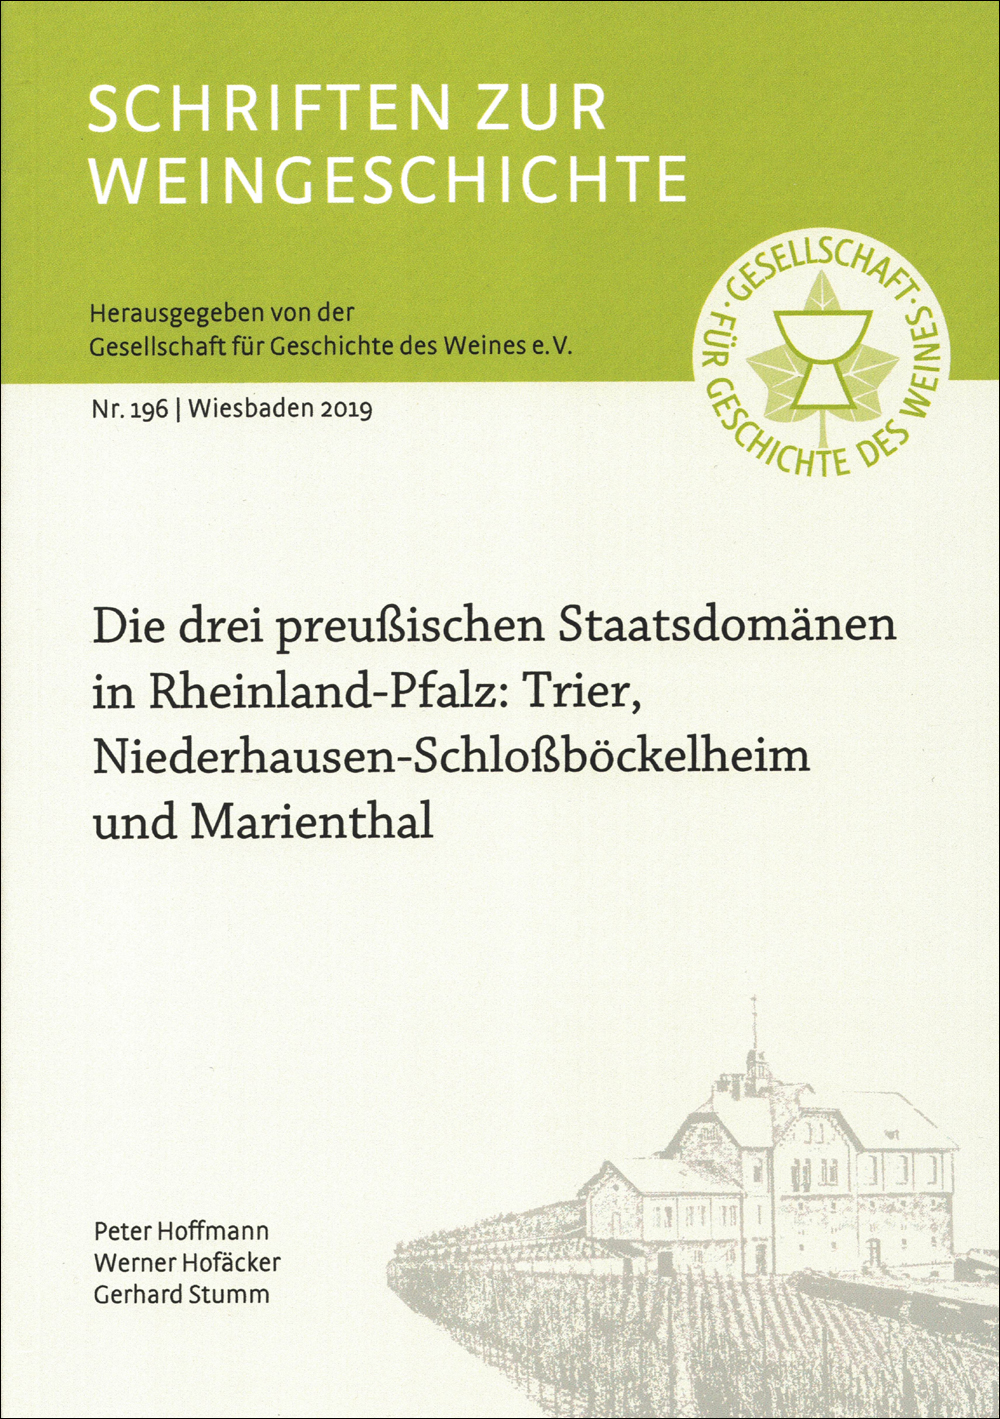 Die drei preußischen Staatsdomänen in Rheinland-Pfalz: Trier, Niederhausen-Schloßböckelheim und Marienthal